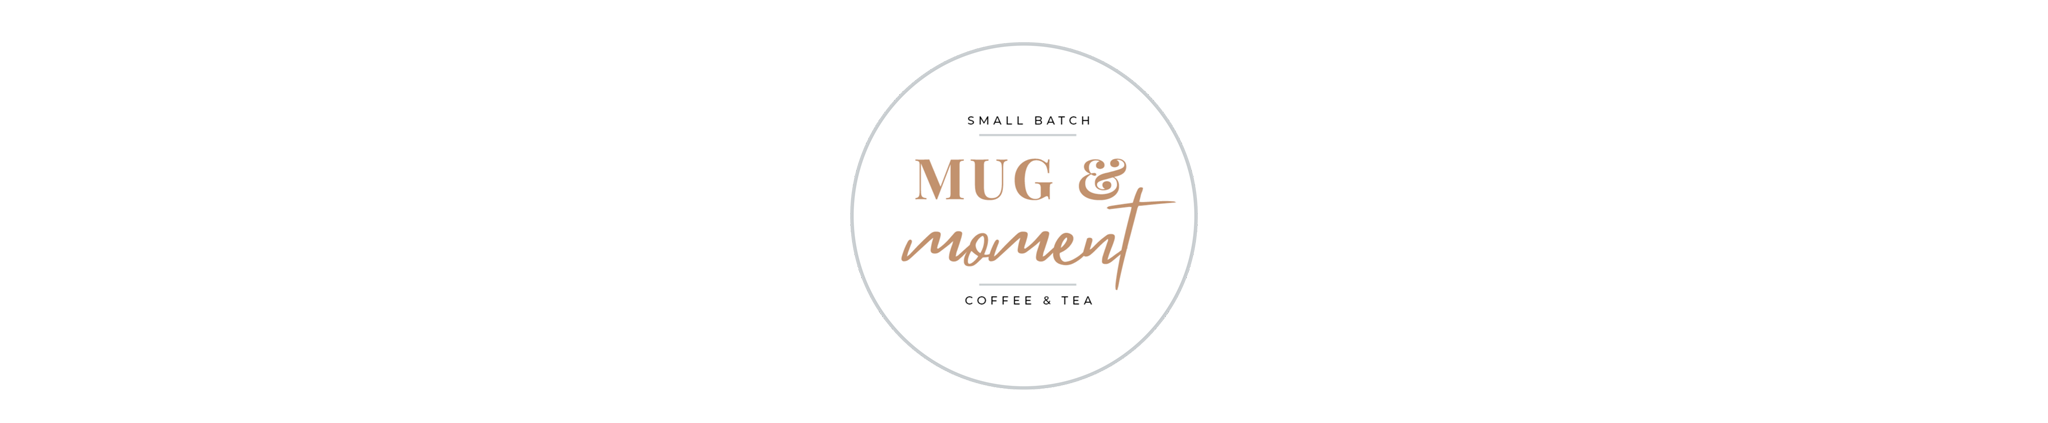 Mug & Moment Coffee